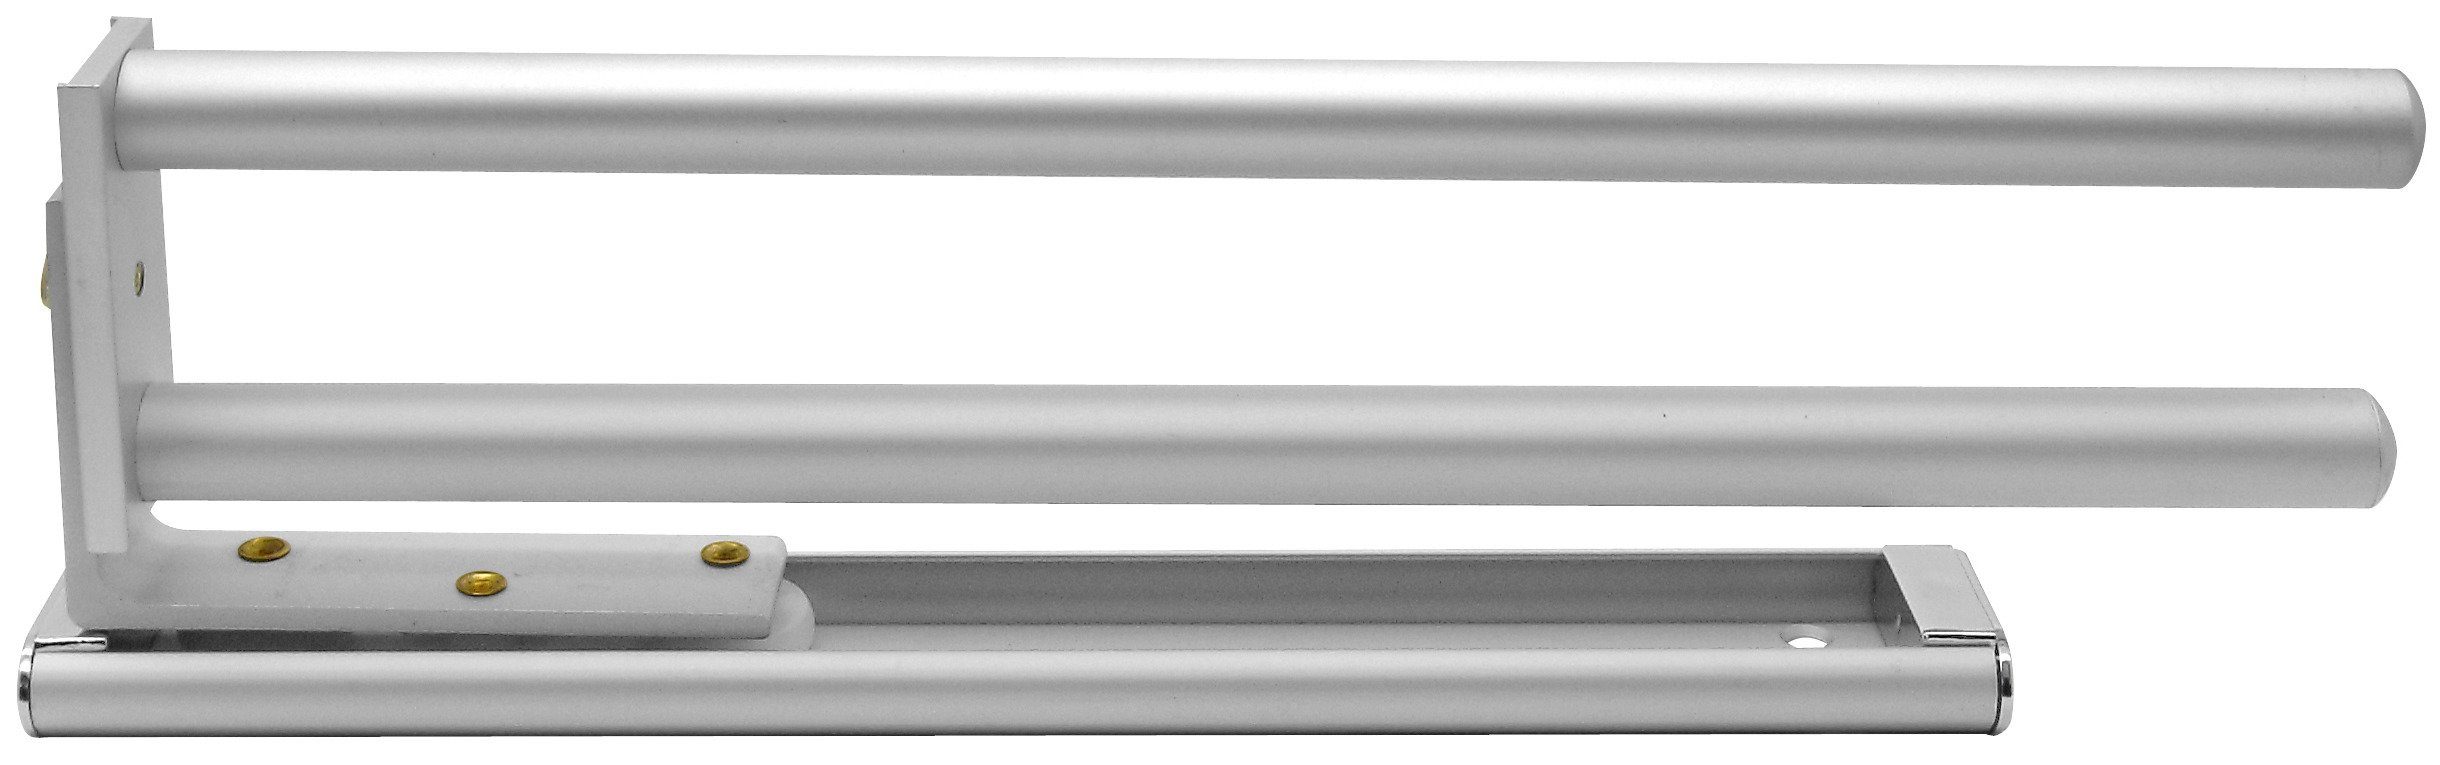 FACKELMANN Handtuchhalter Aluminium, Ausziehbar bis 46 cm, Schlichtes Design